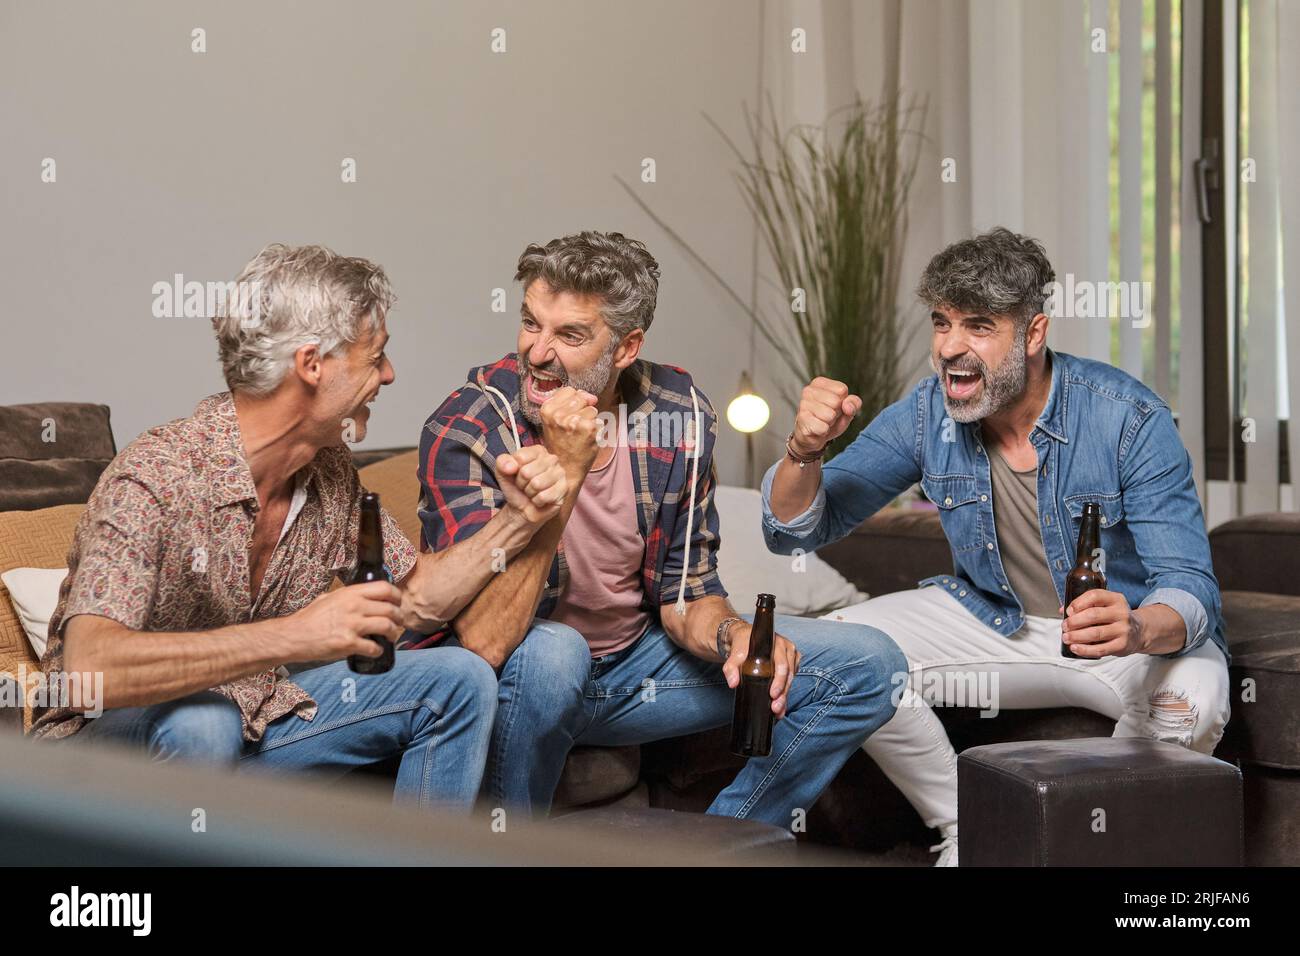 Erwachsene Männer schauen sich an und feiern das Tor im Spiel, während sie auf dem Sofa sitzen und zu Hause Bier trinken Stockfoto